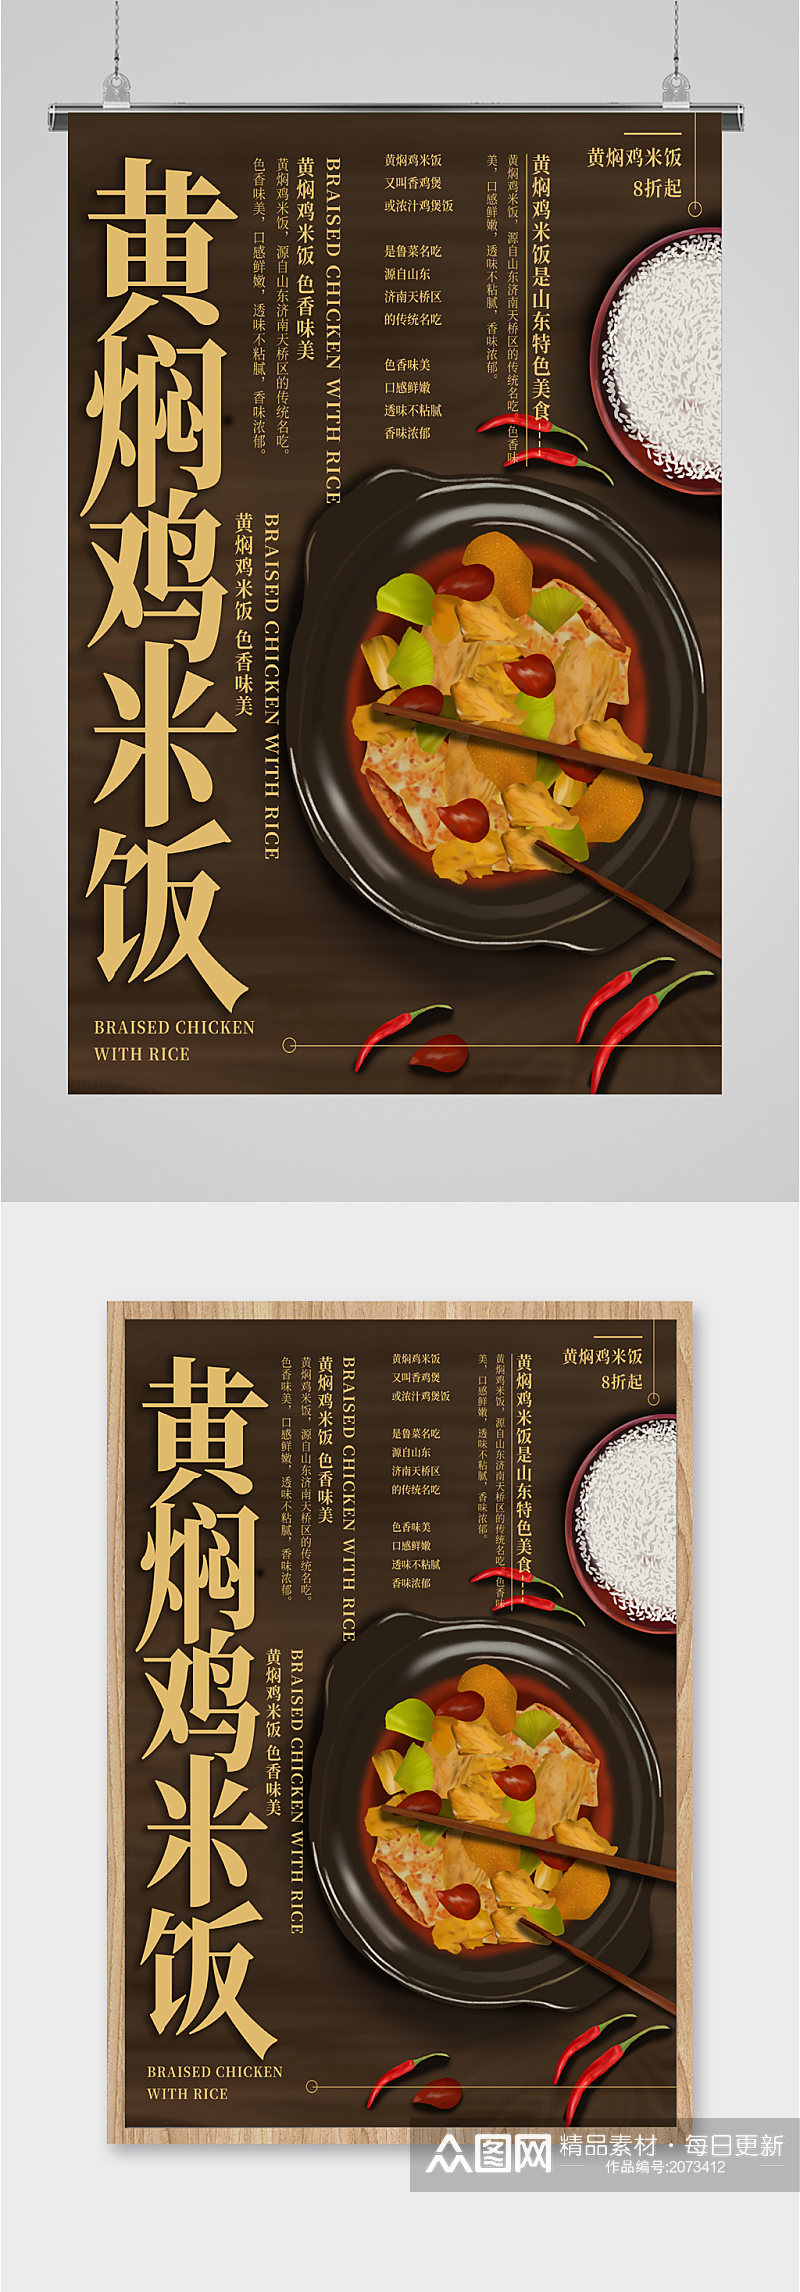 黄焖鸡米饭美食海报素材